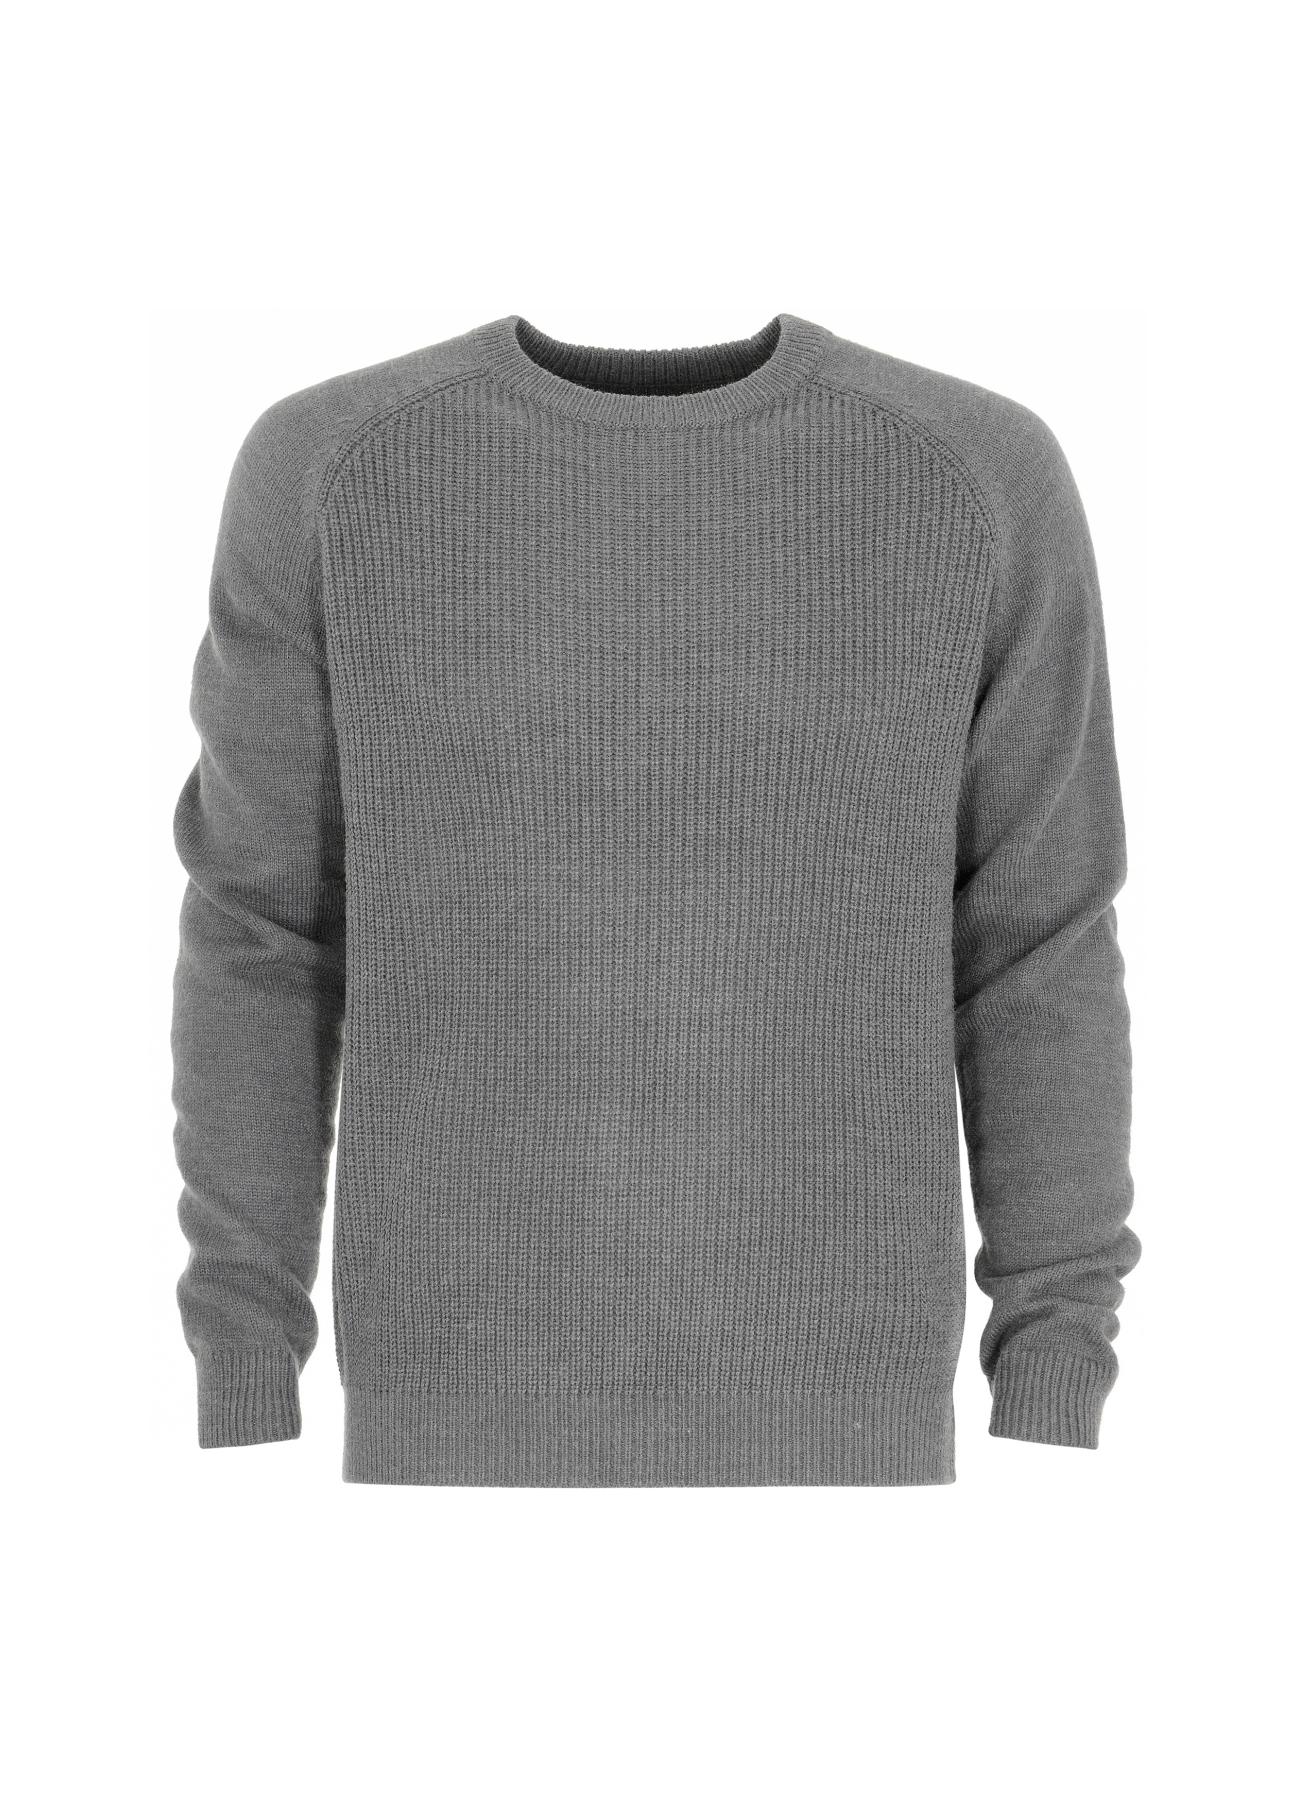 Sweter męski SWEMT-0086-91(Z20)